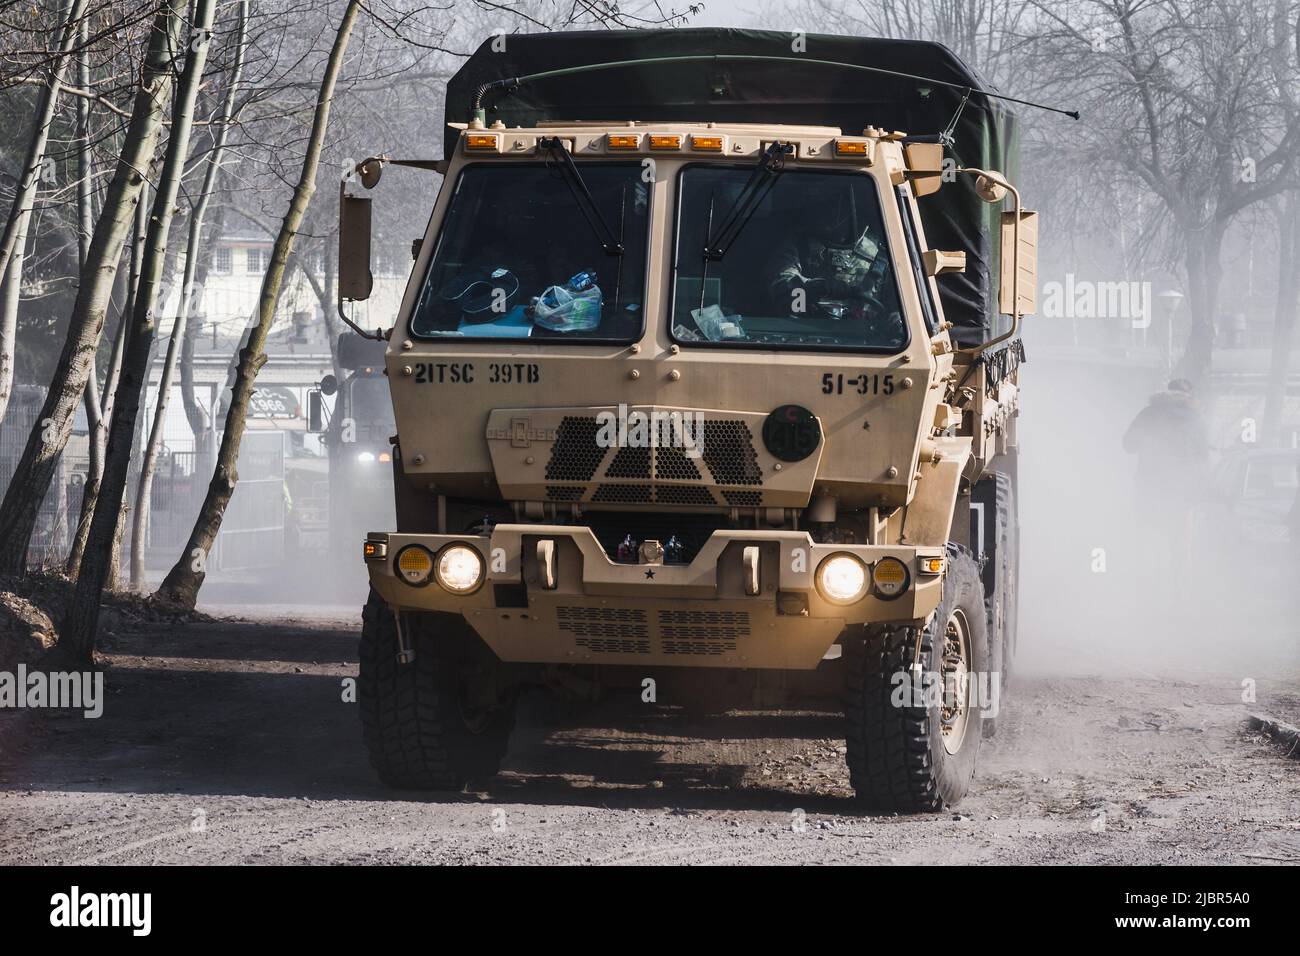 Lublino, Polonia - 25 marzo 2015: Esercito degli Stati Uniti Oshkosh veicolo tattico medio che passa per le strade della città Foto Stock